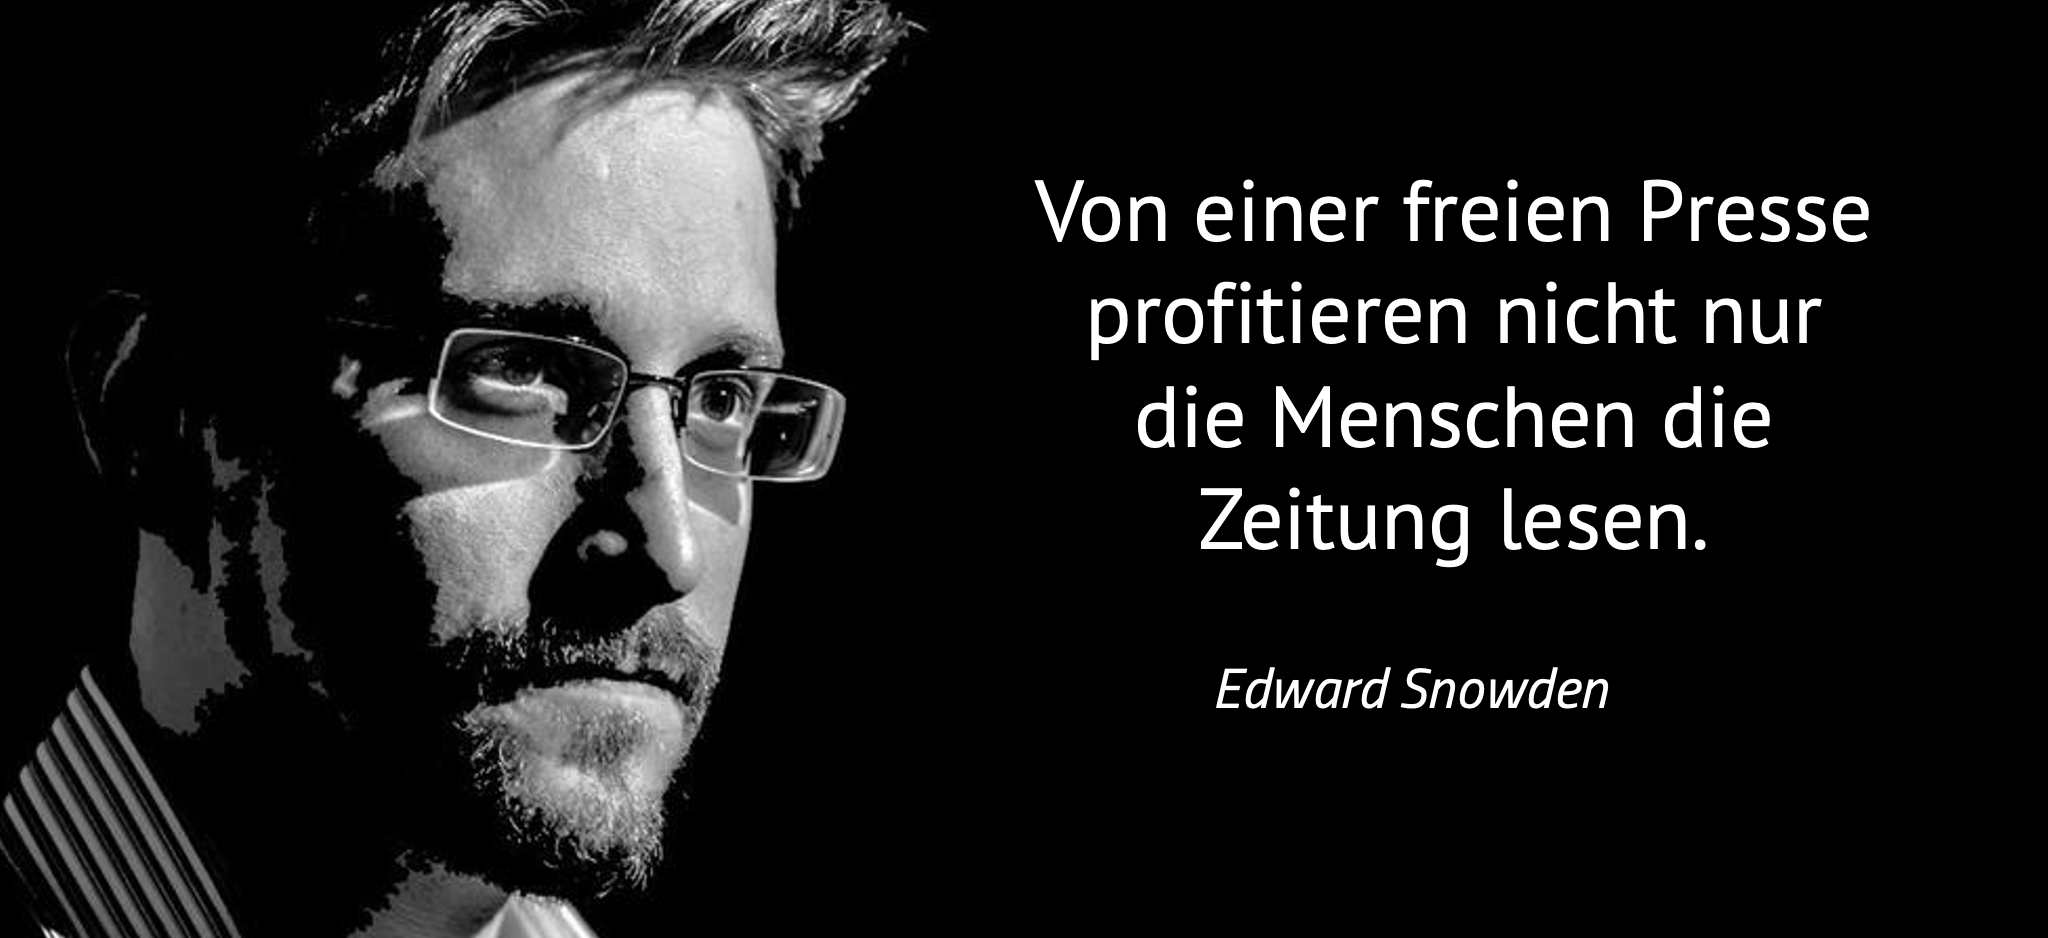 Bild und Zitat von Edward Snowden: Von einer freien Presse profitieren nicht nur die Menschen die Zeitung lesen.